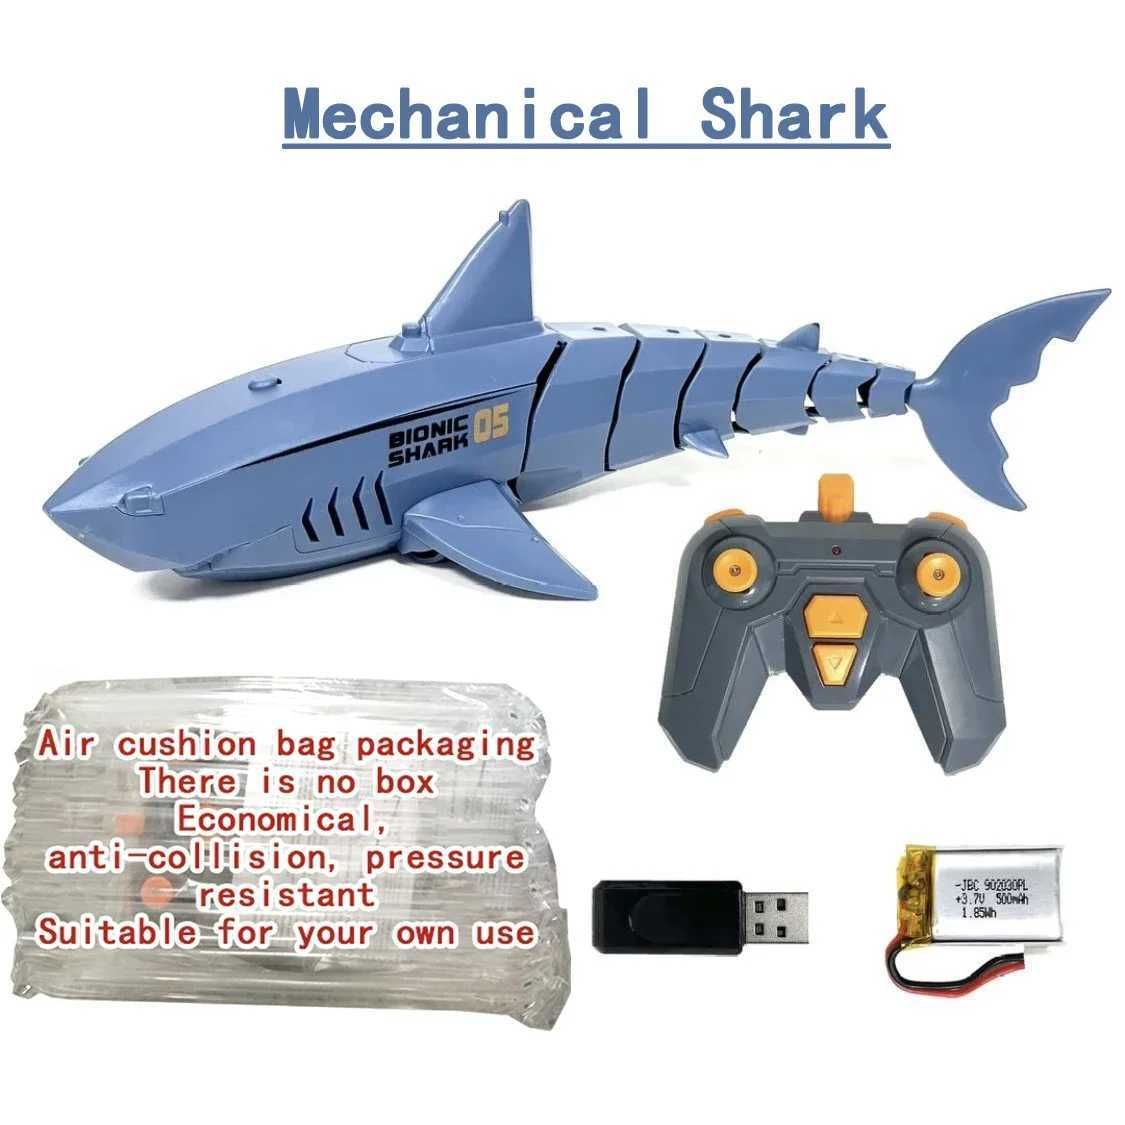 Mechanical Shark C1